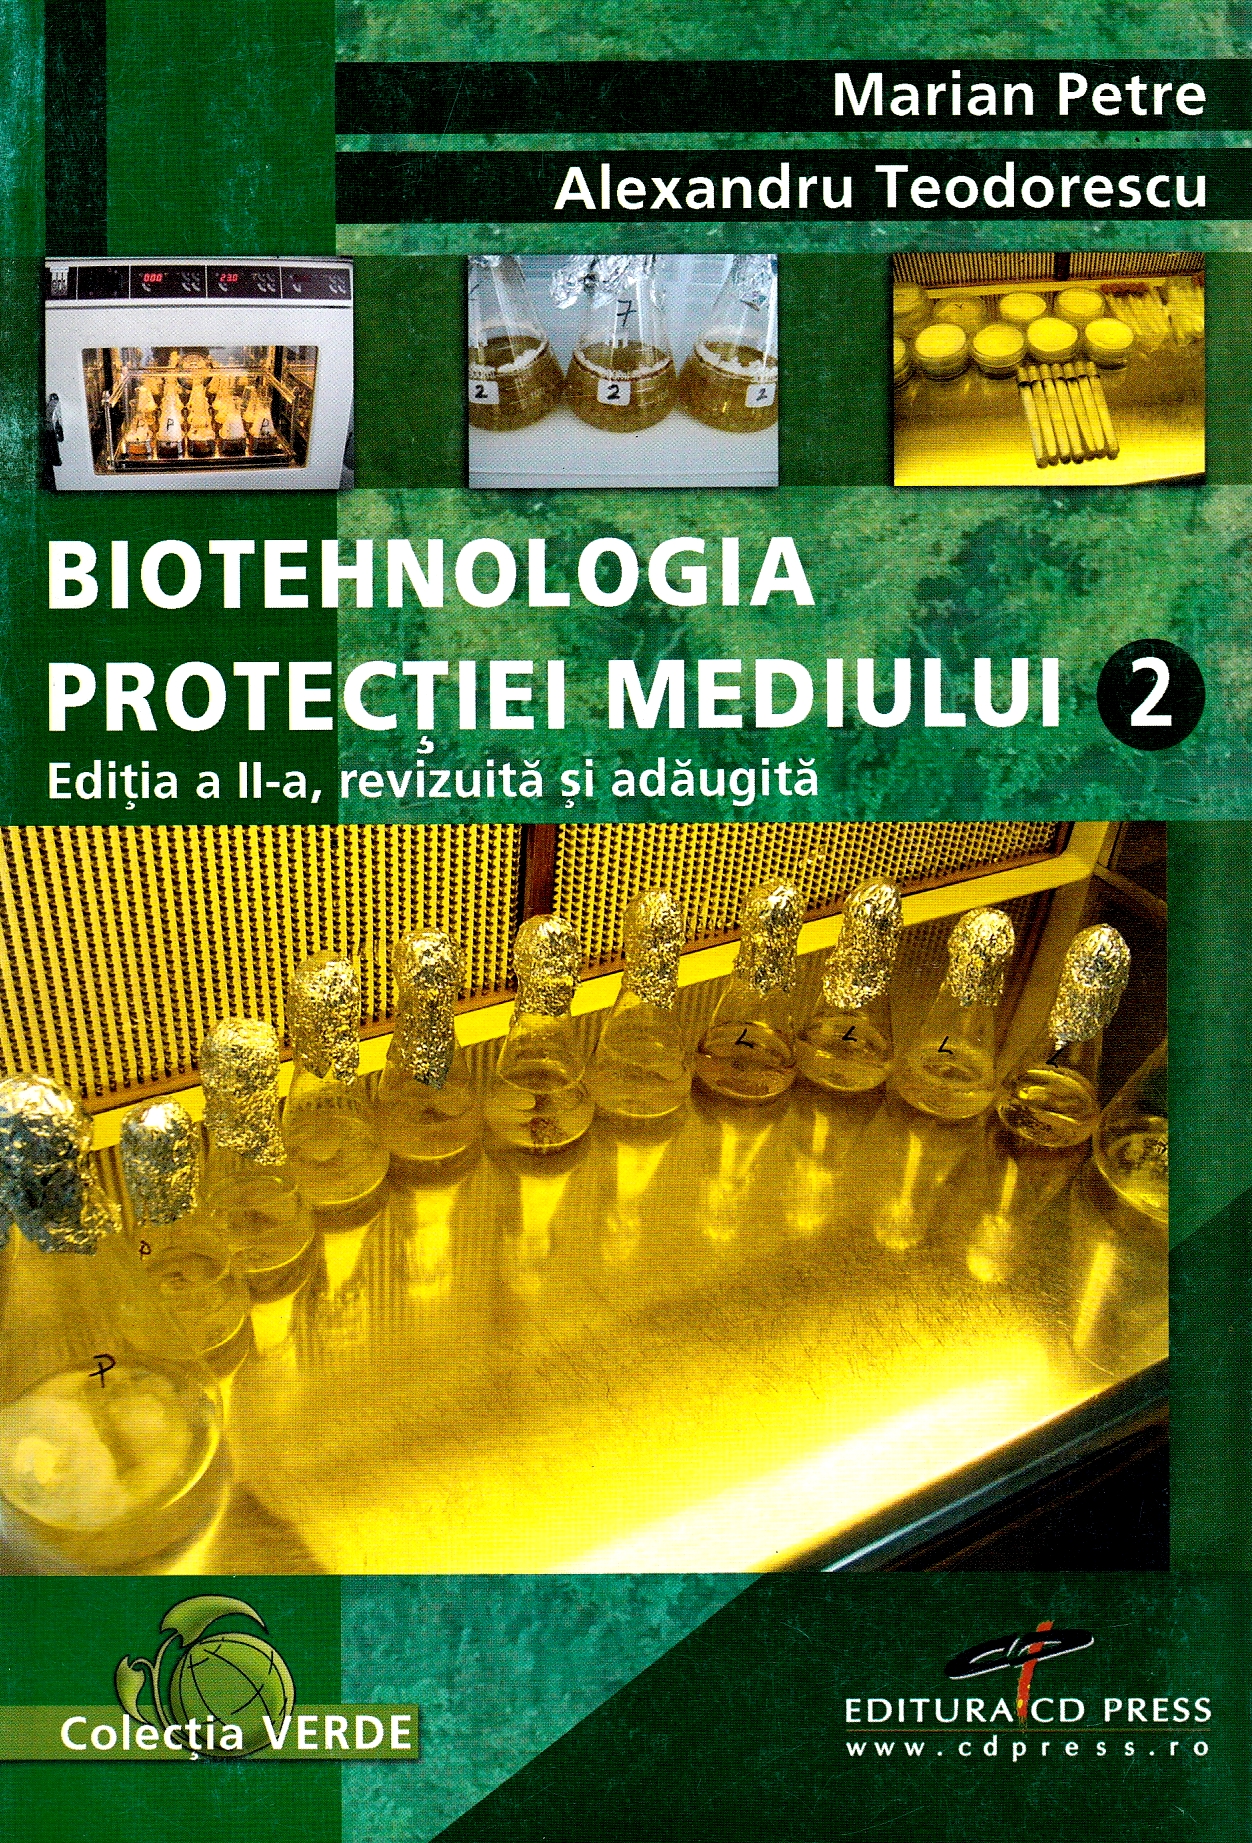 Biotehnologia protectiei mediului Vol 2 - Marian Petre, Alexandru Teodorescu